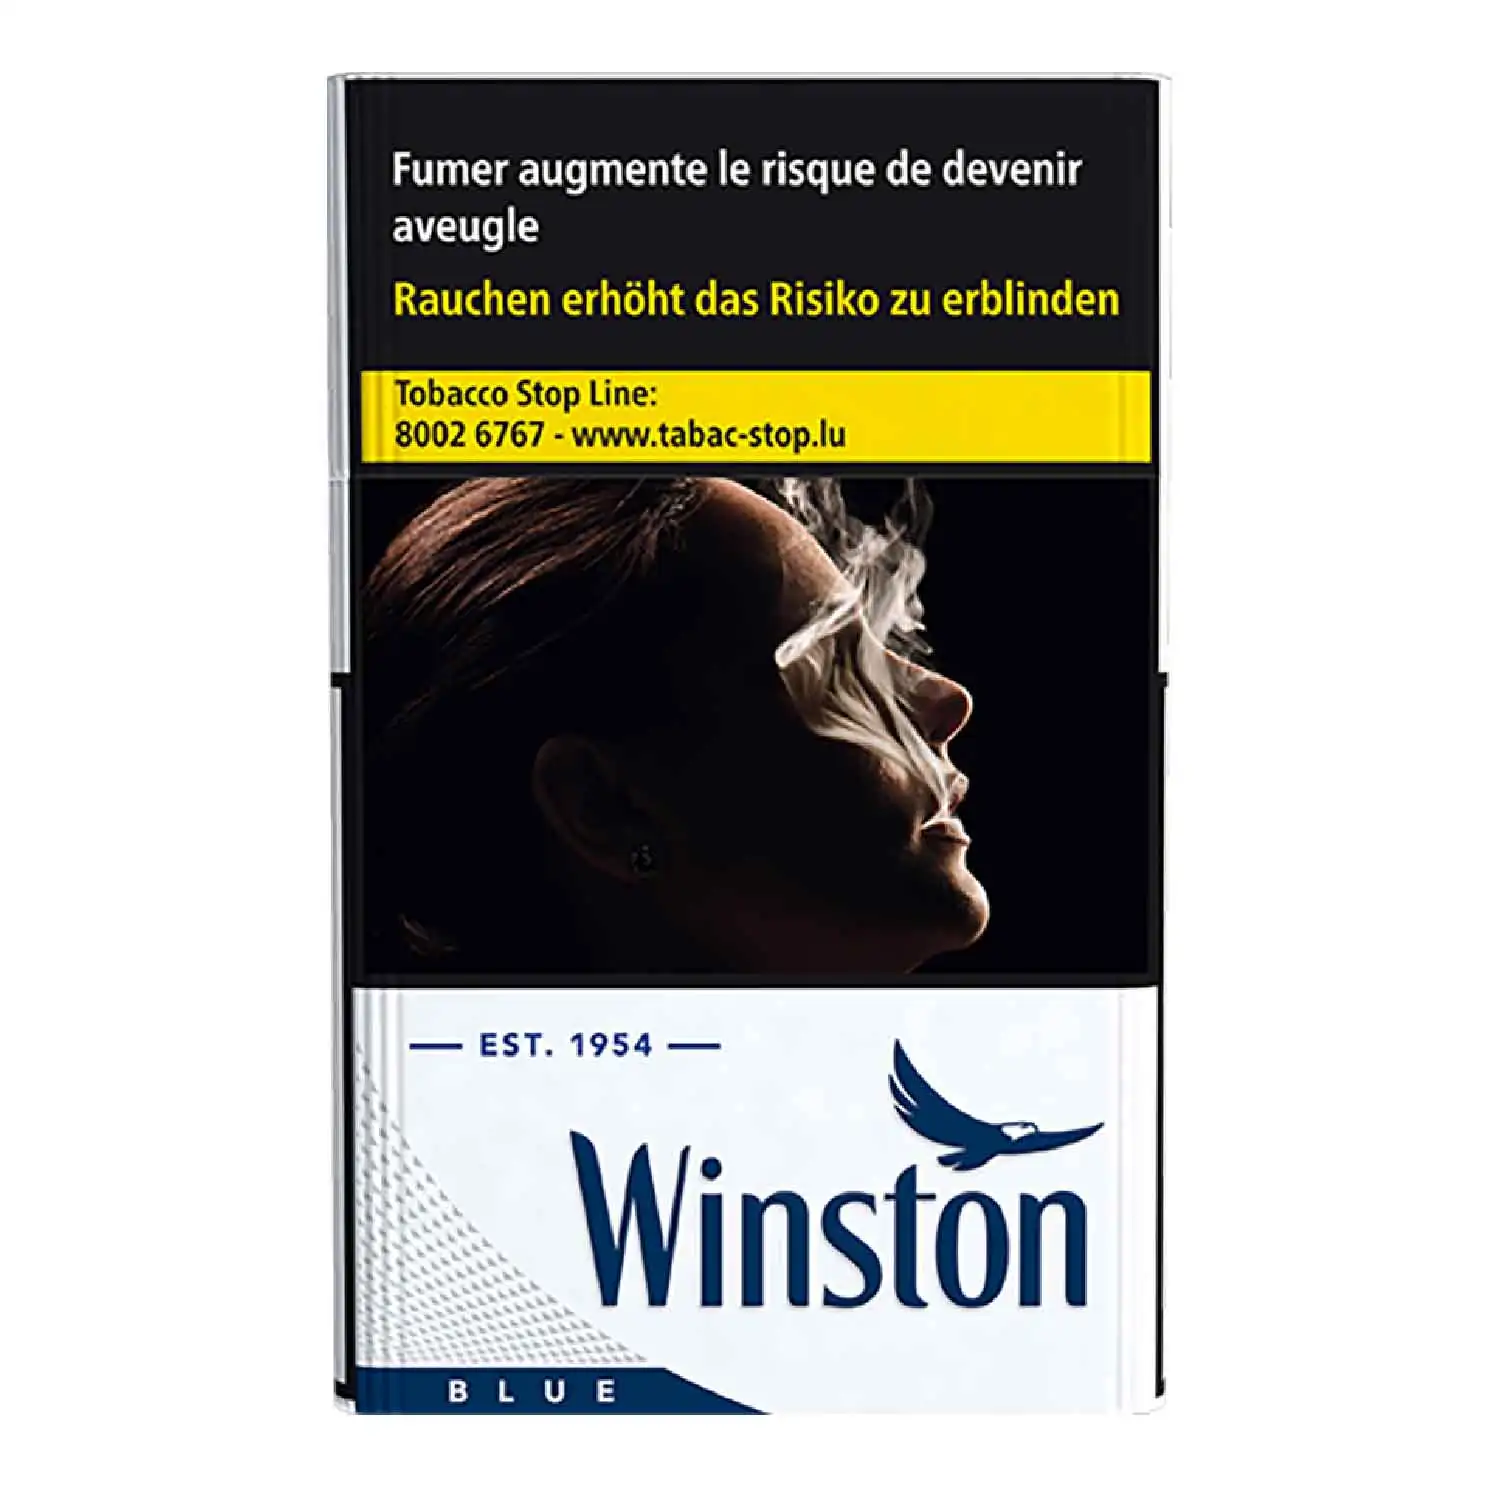 Winston bleu 20 (S) - Buy at Real Tobacco